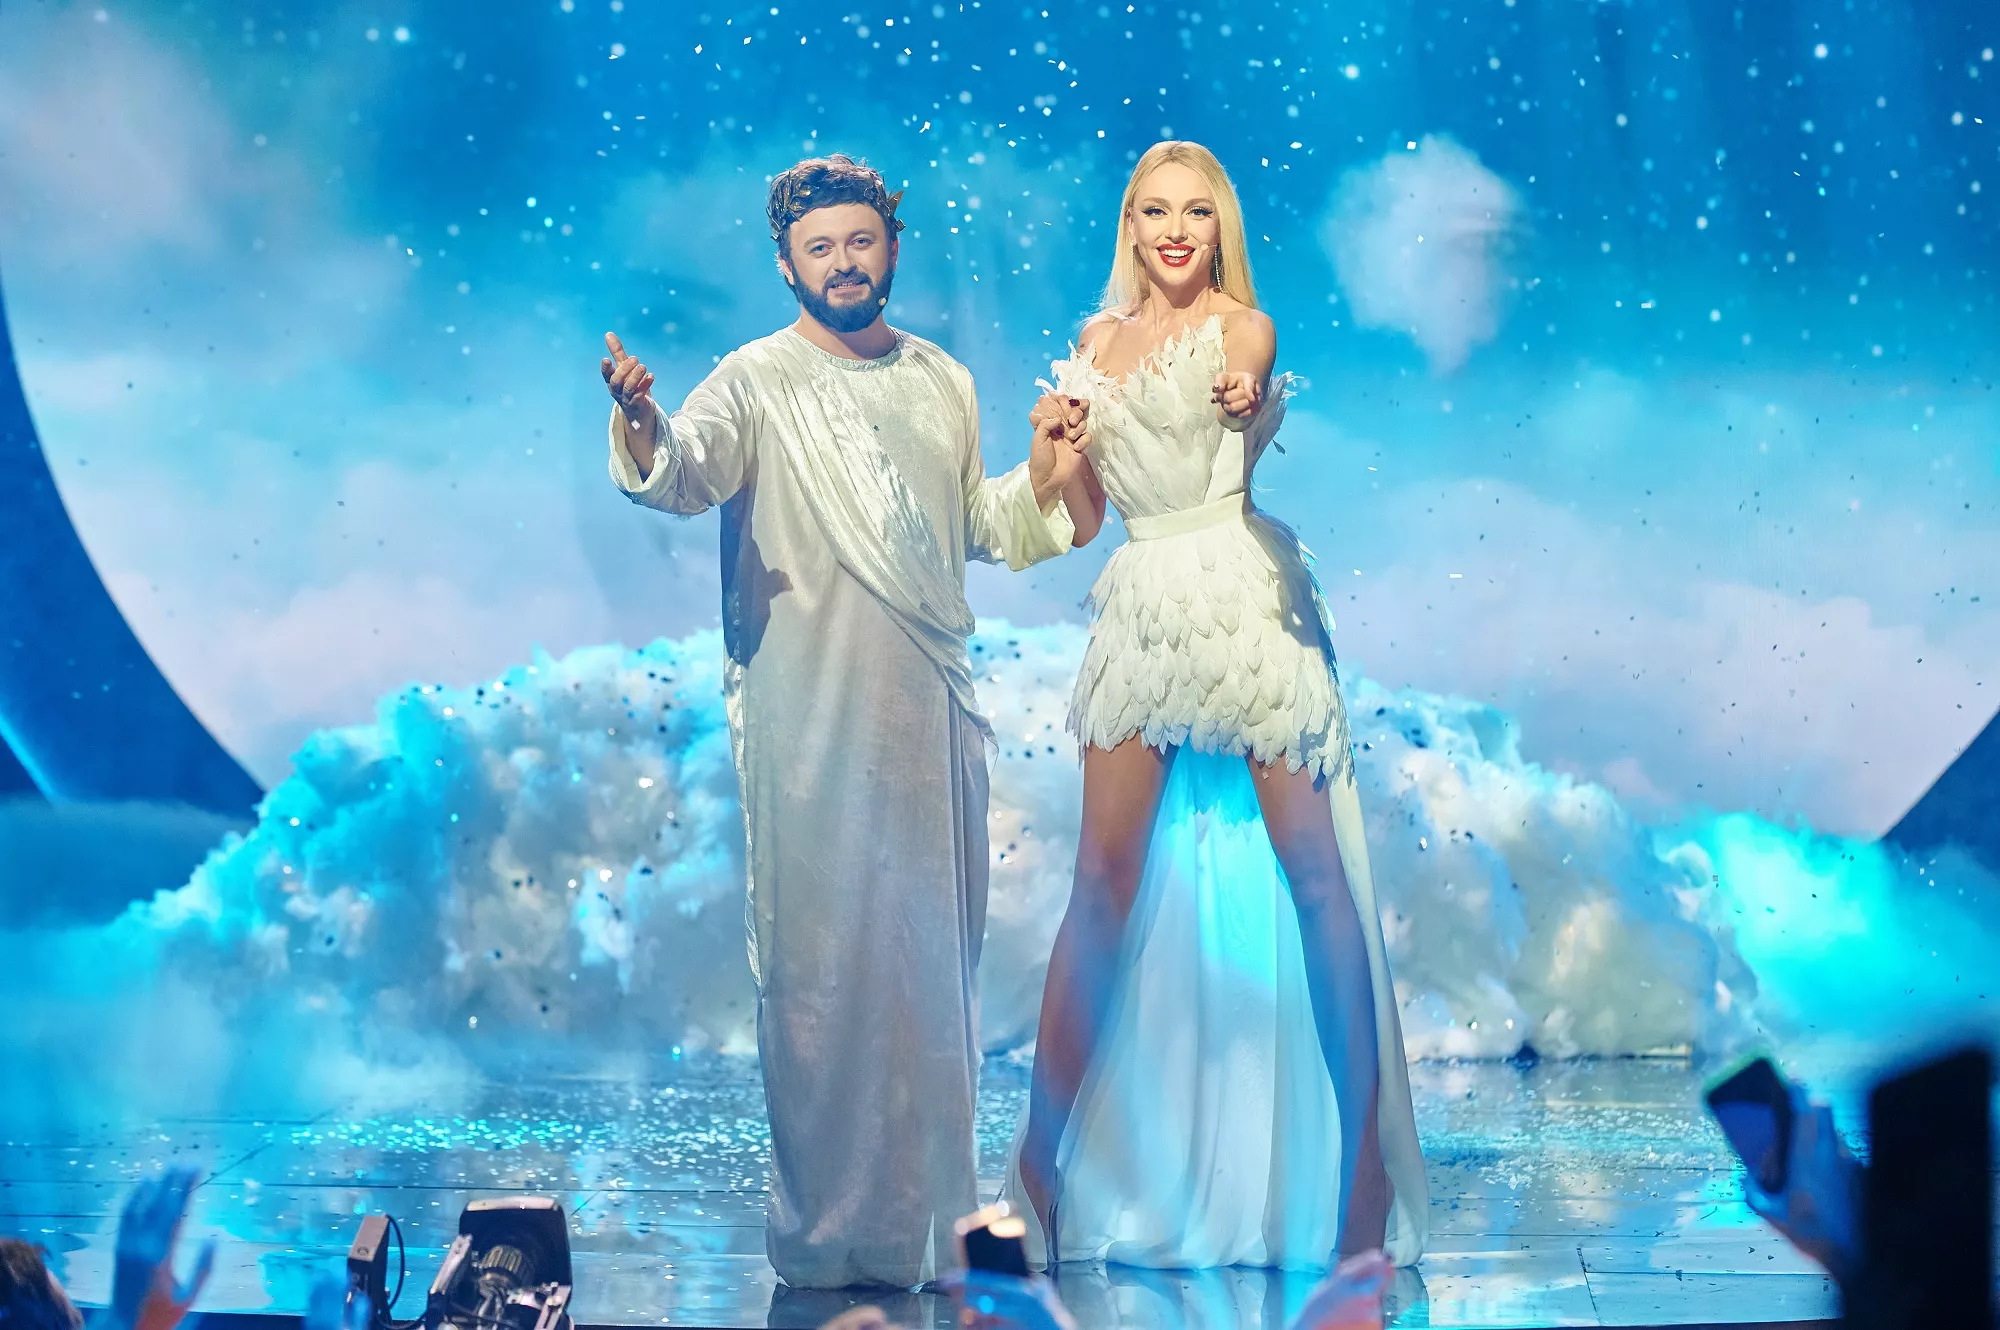 DZIDZIO та Оля Полякова виступлять на шоу "Новорічна Маска".